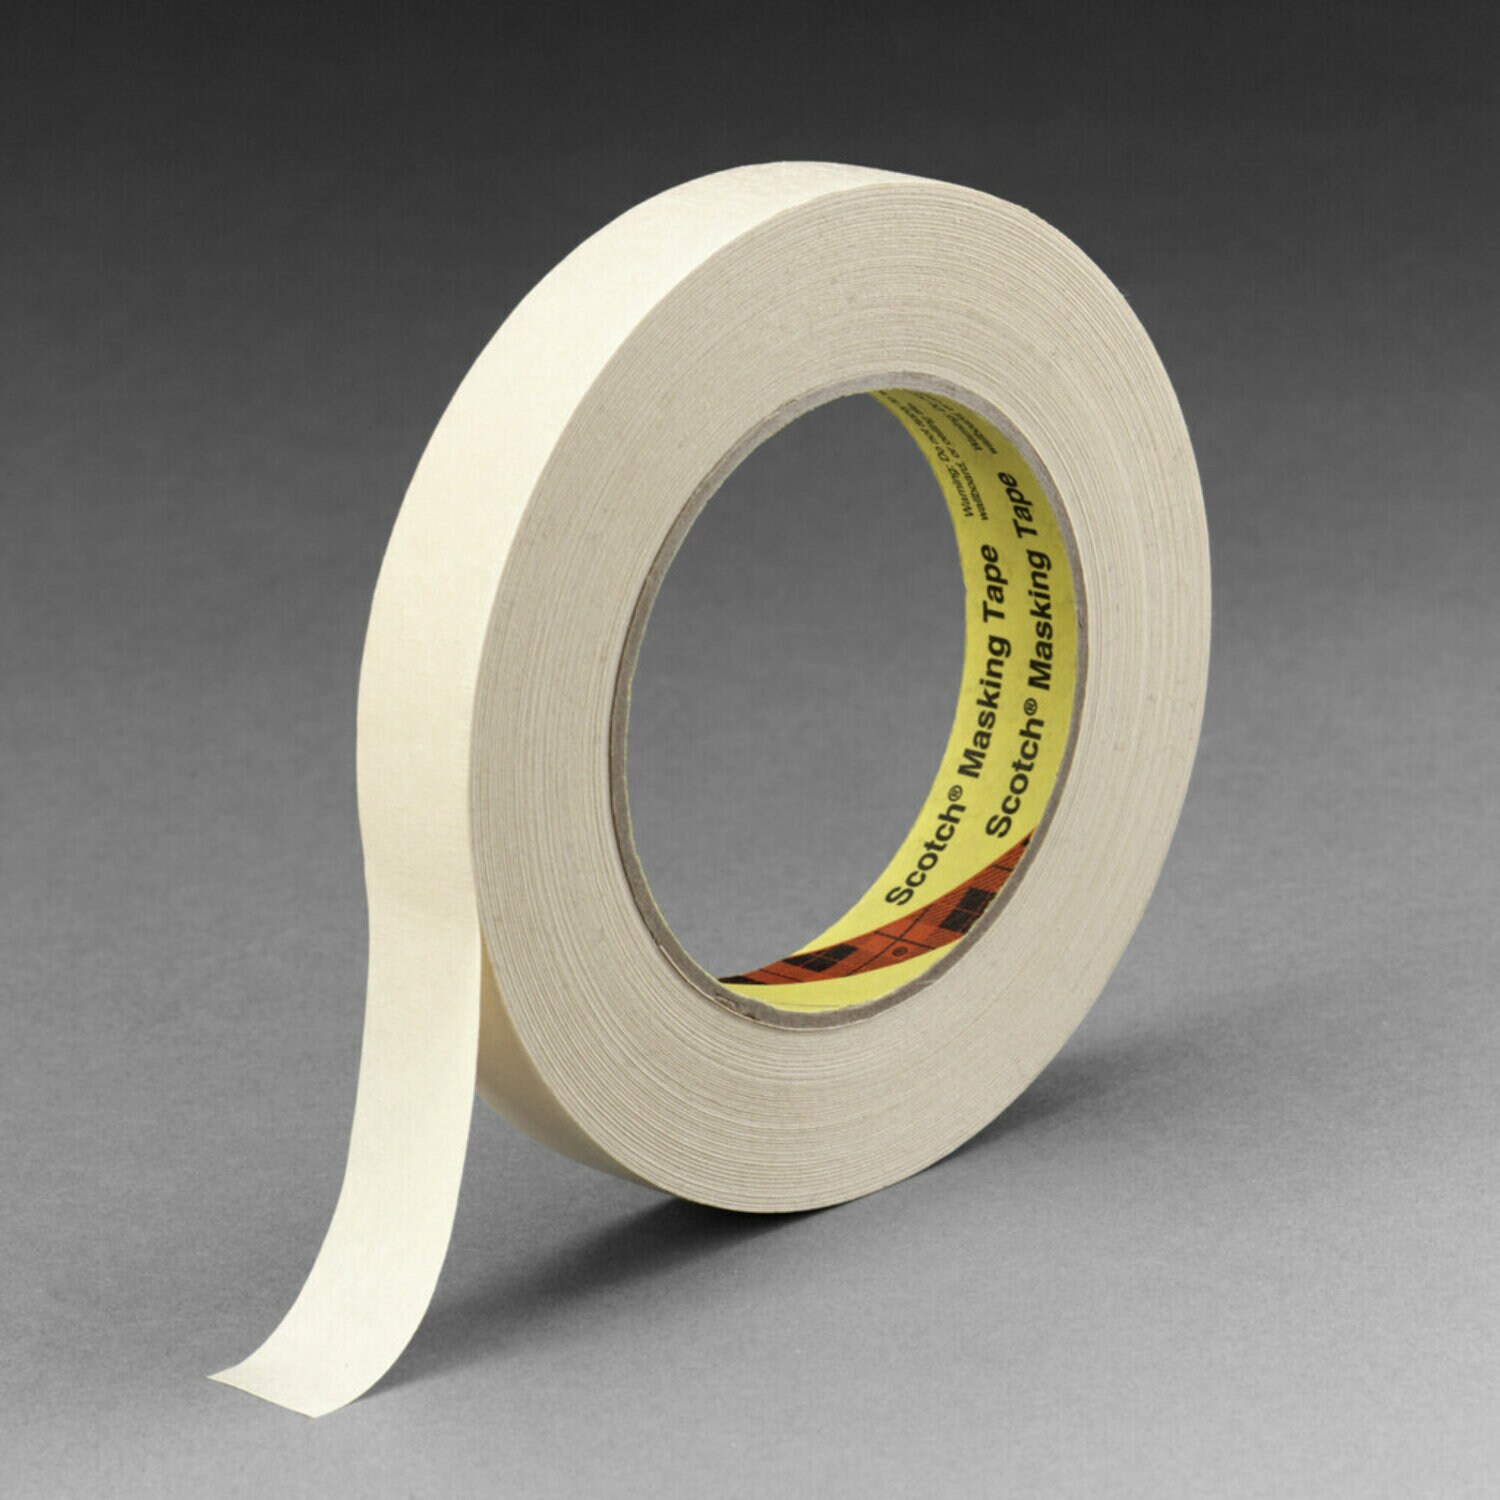 1 x 60 yds 4.9 Mil Yellow Masking Tape | Tape, Packing Tape, Packaging Tape | Masking Tape